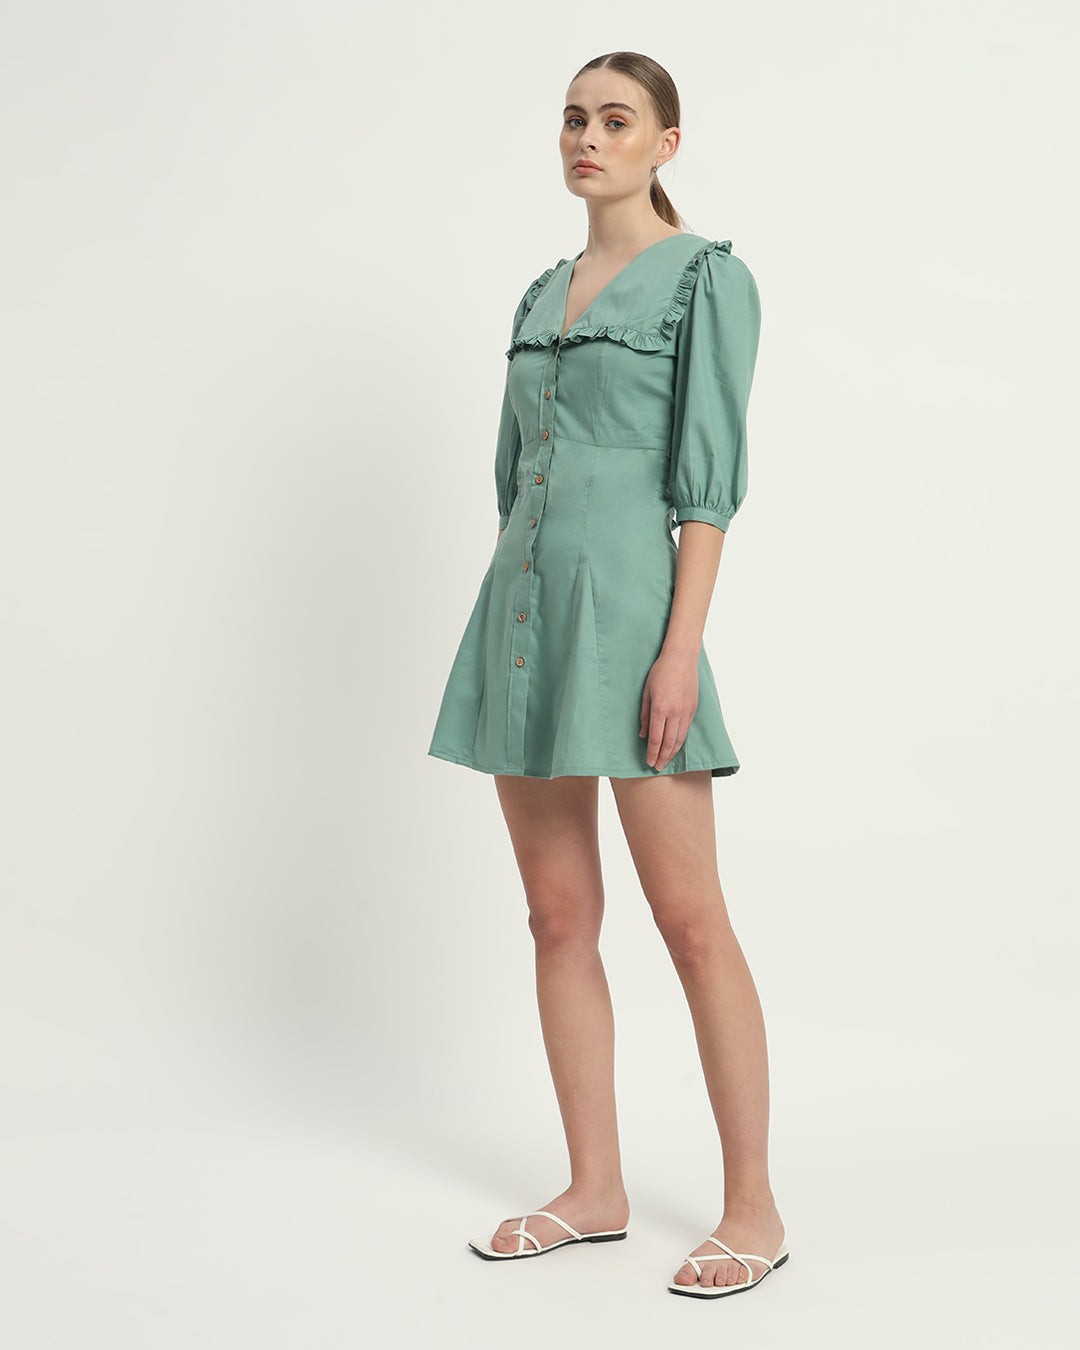 The Mint Isabela Cotton Dress